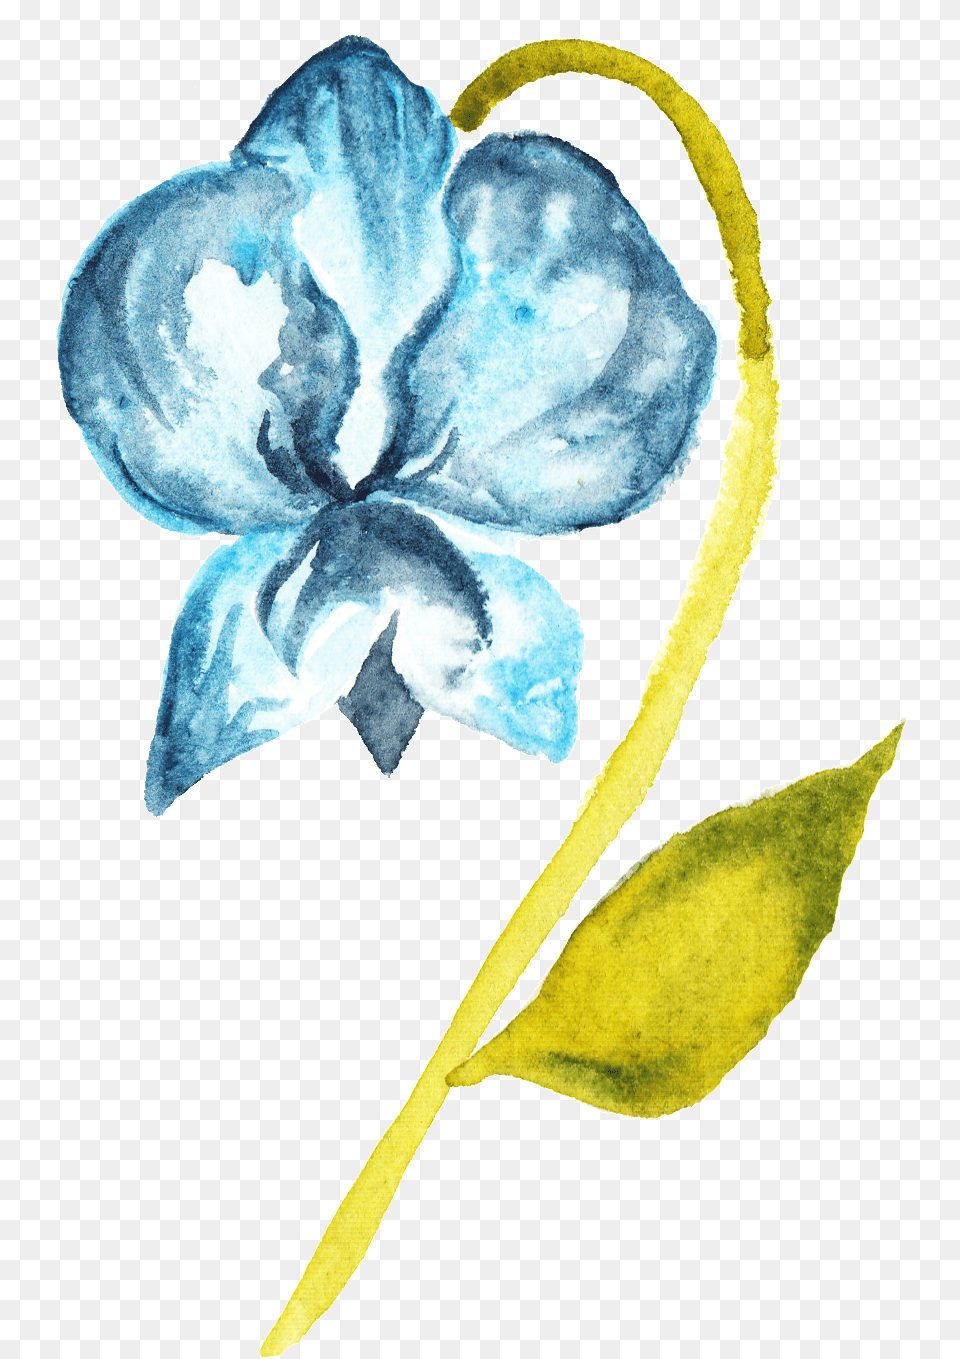 Blue, Plant, Petal, Flower, Anemone Free Transparent Png